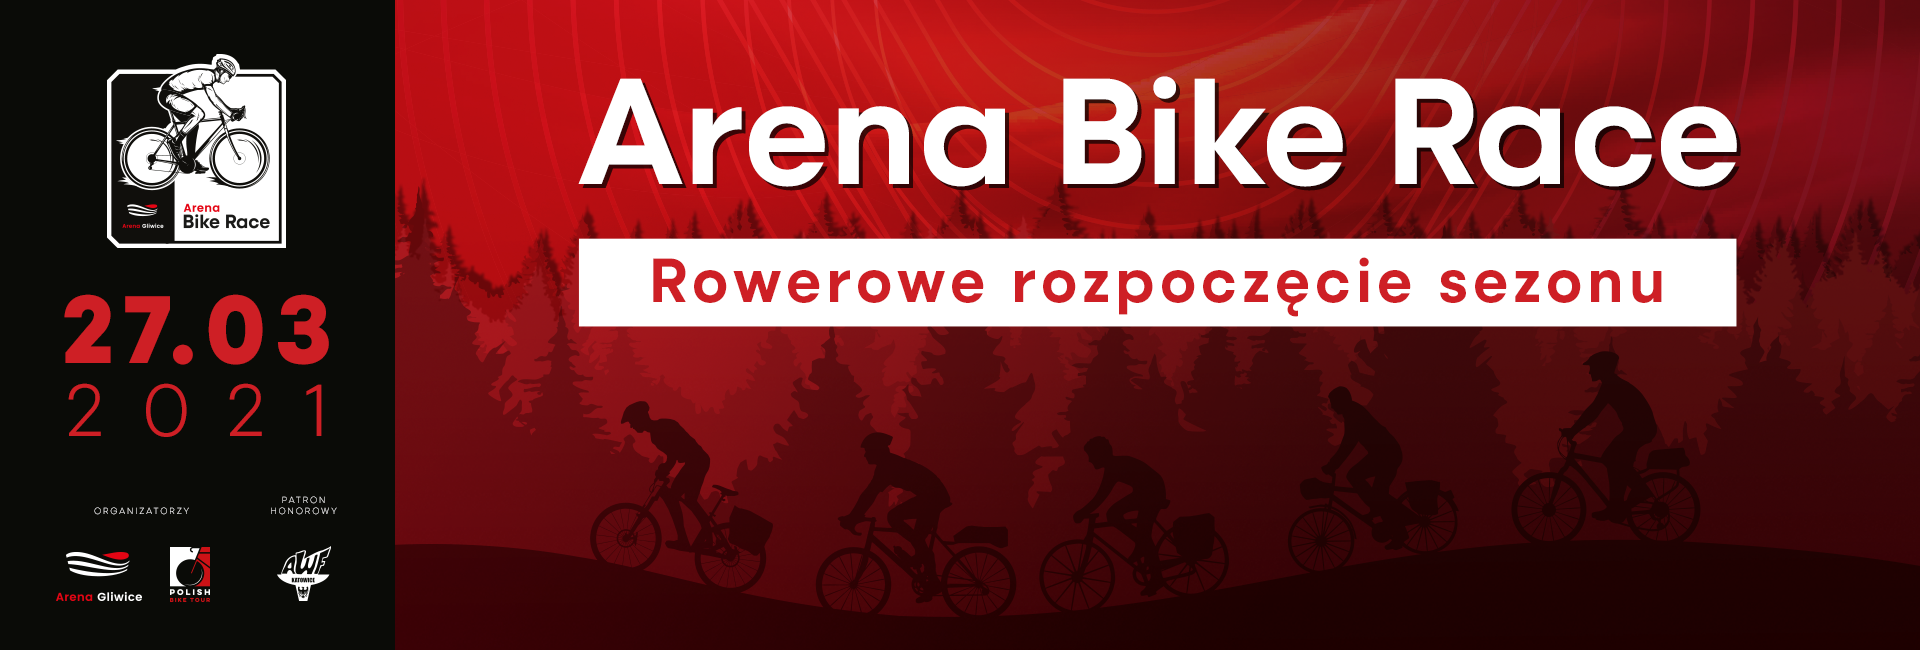 Arena Bike Race WYDARZENIE ODWOŁANE